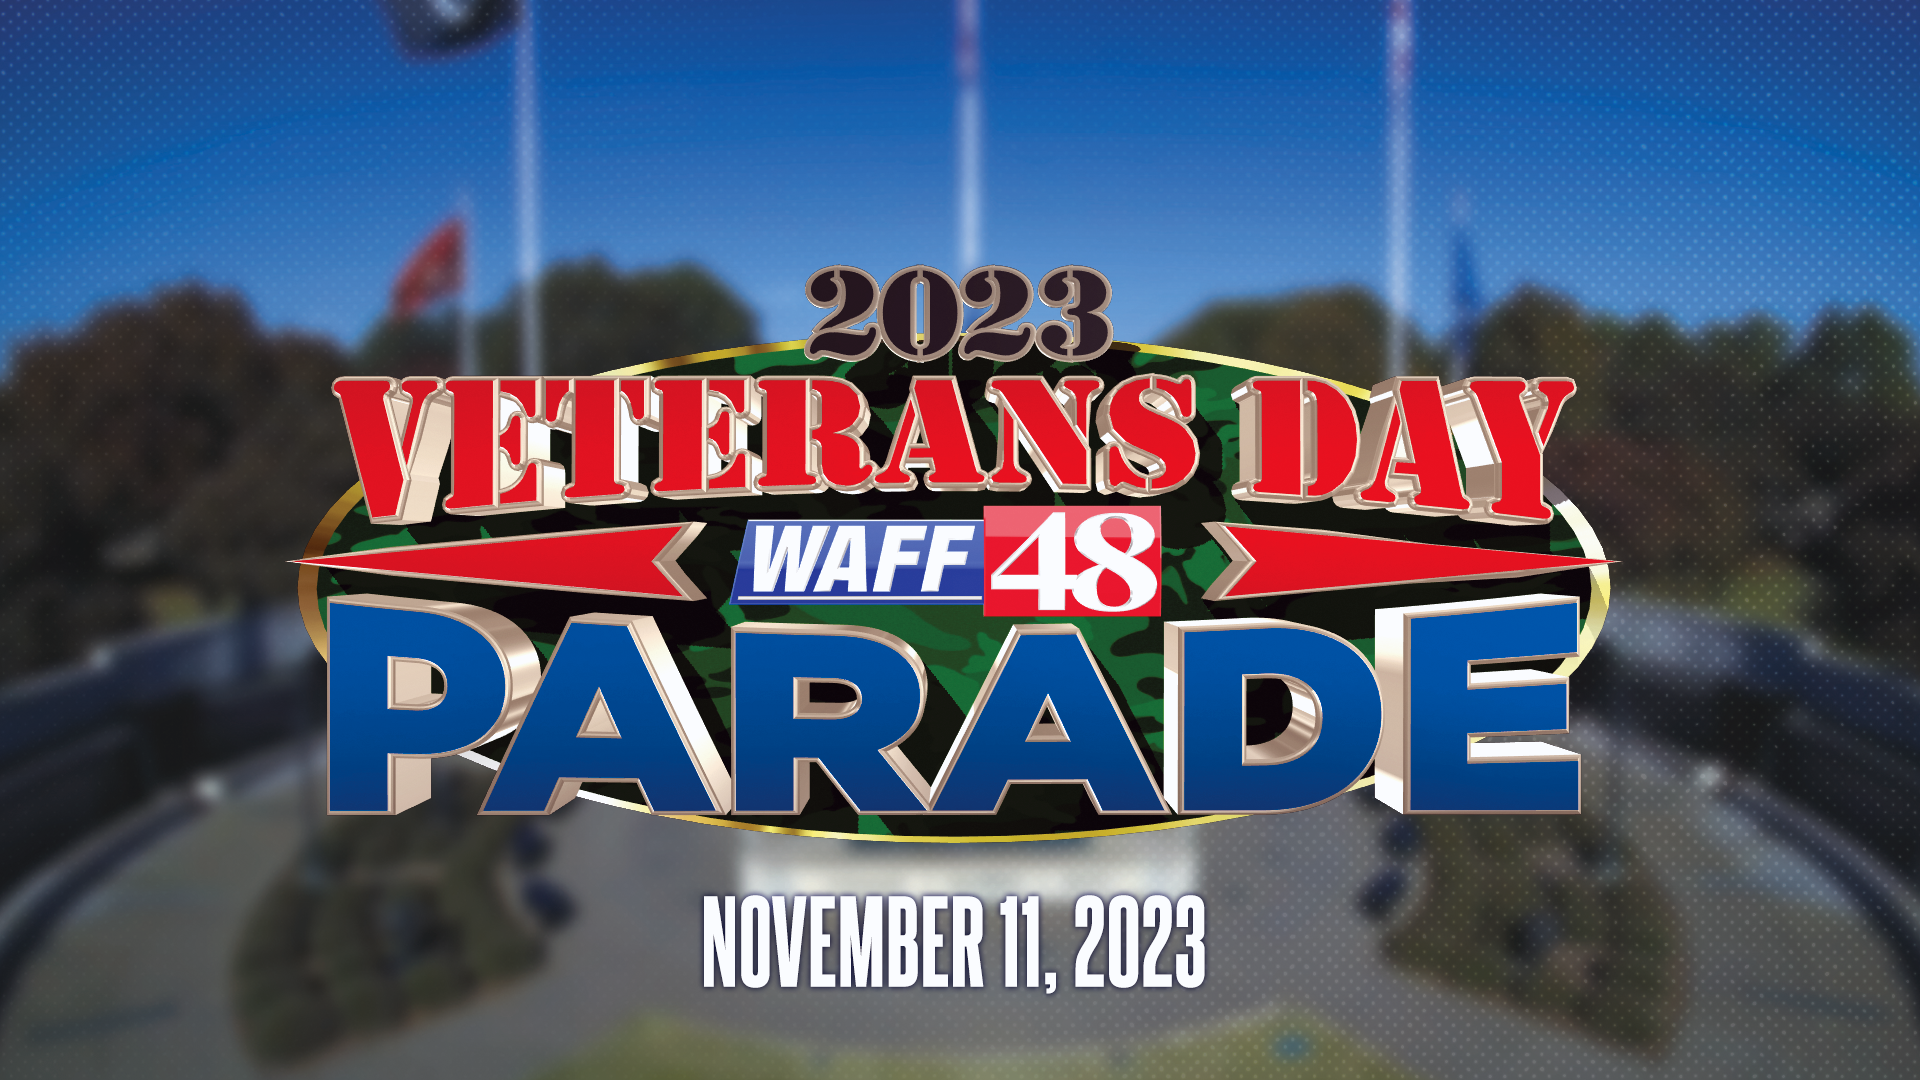 Veterans Day in 2023